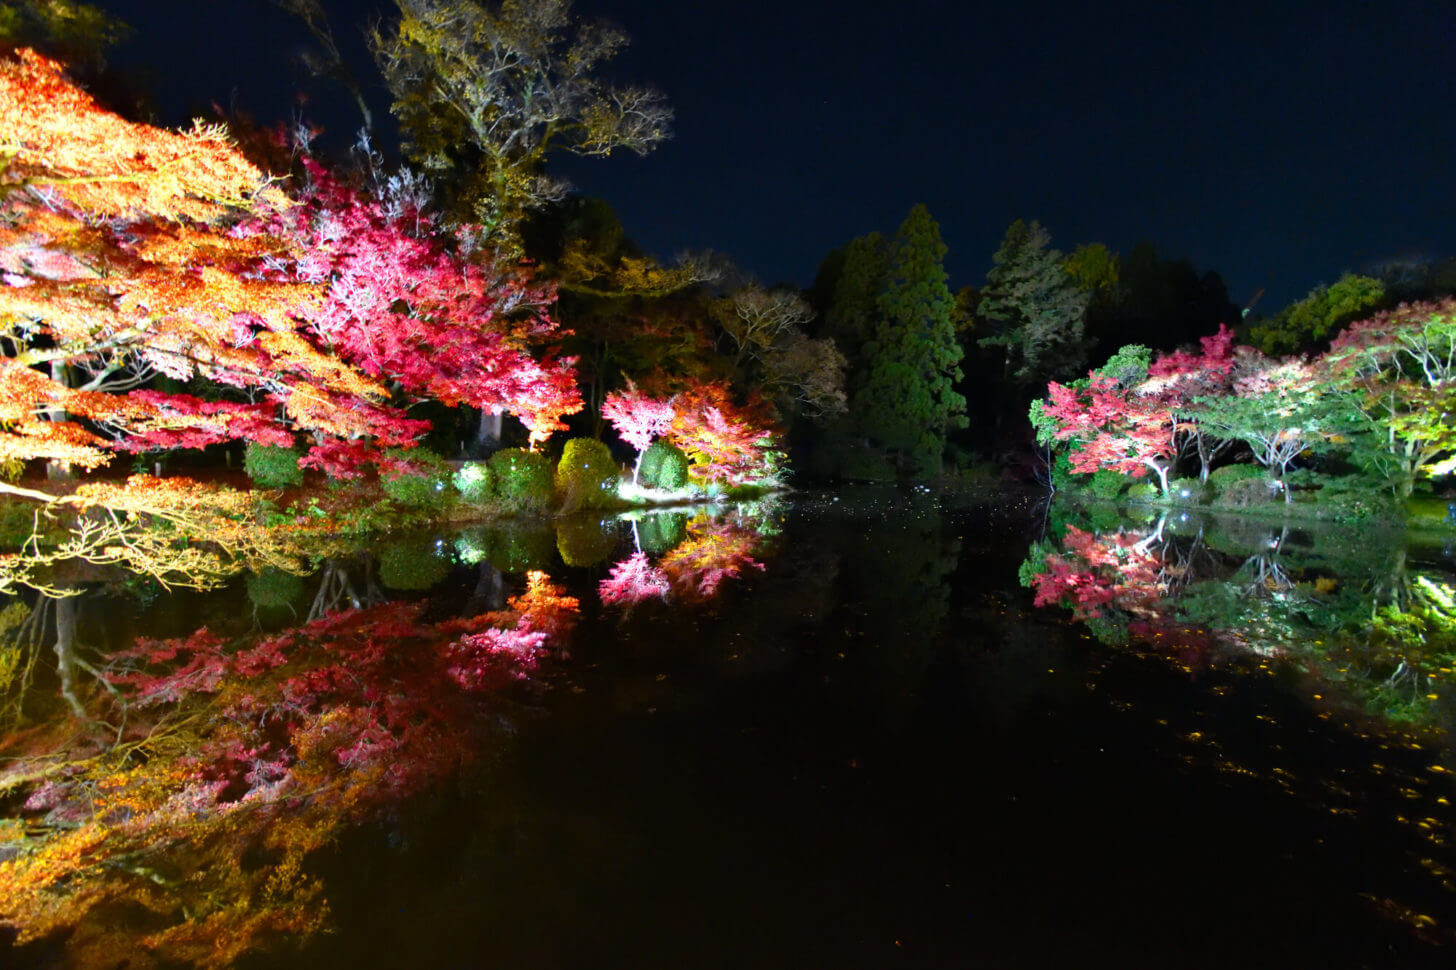 京都府立植物園「世界の紅葉ライトアップ」のリフレクション